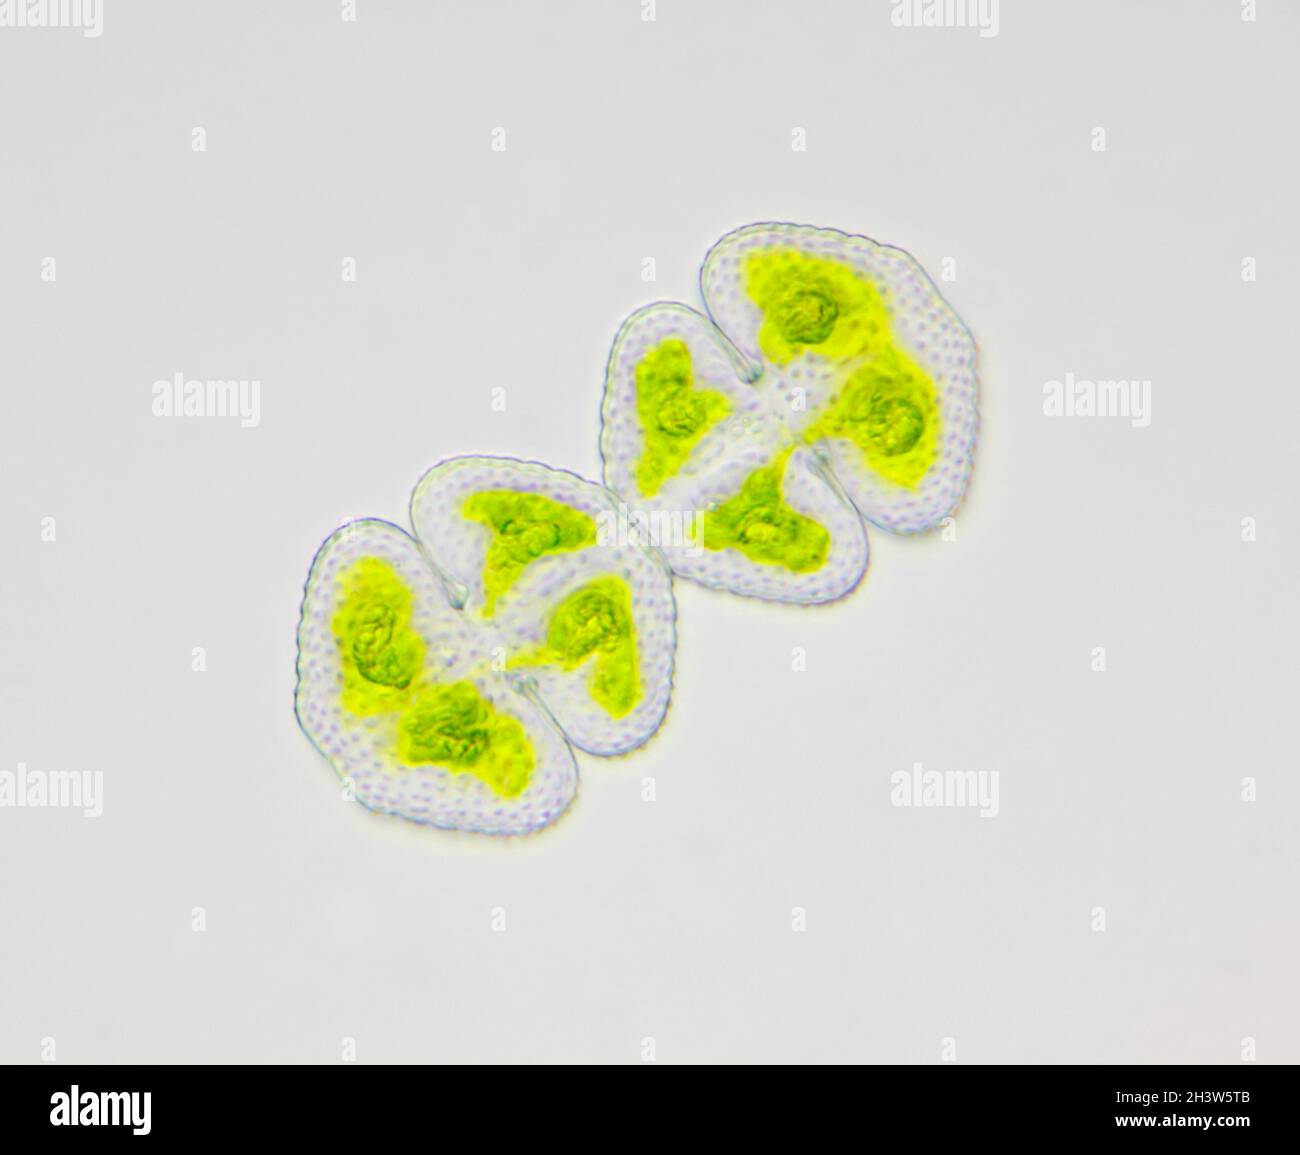 Mikroskopische Ansicht von zwei Grünalgen (Cosmarium). Hellfeldbeleuchtung. Stockfoto